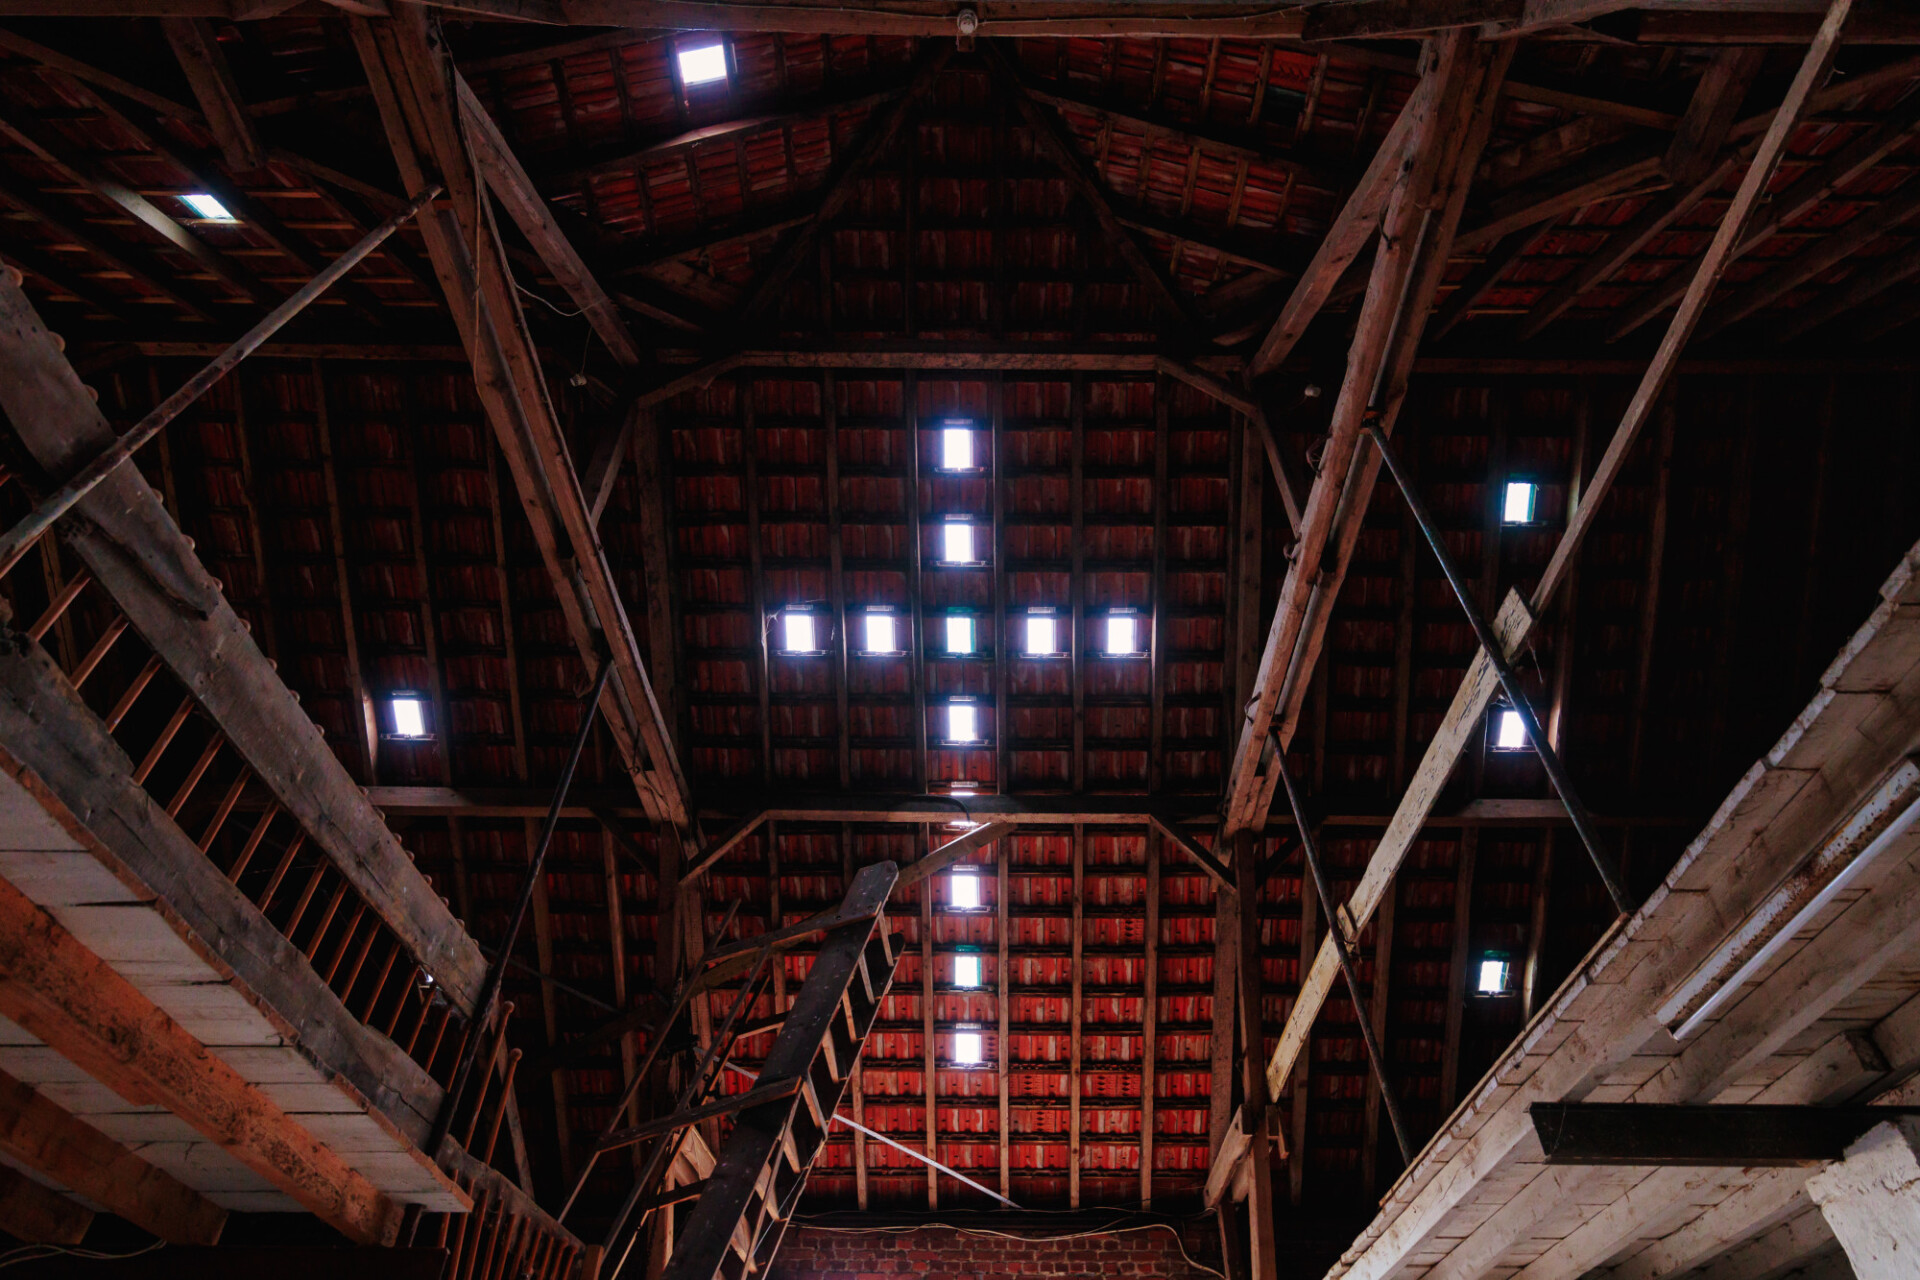 Jesus cross windows in a barn